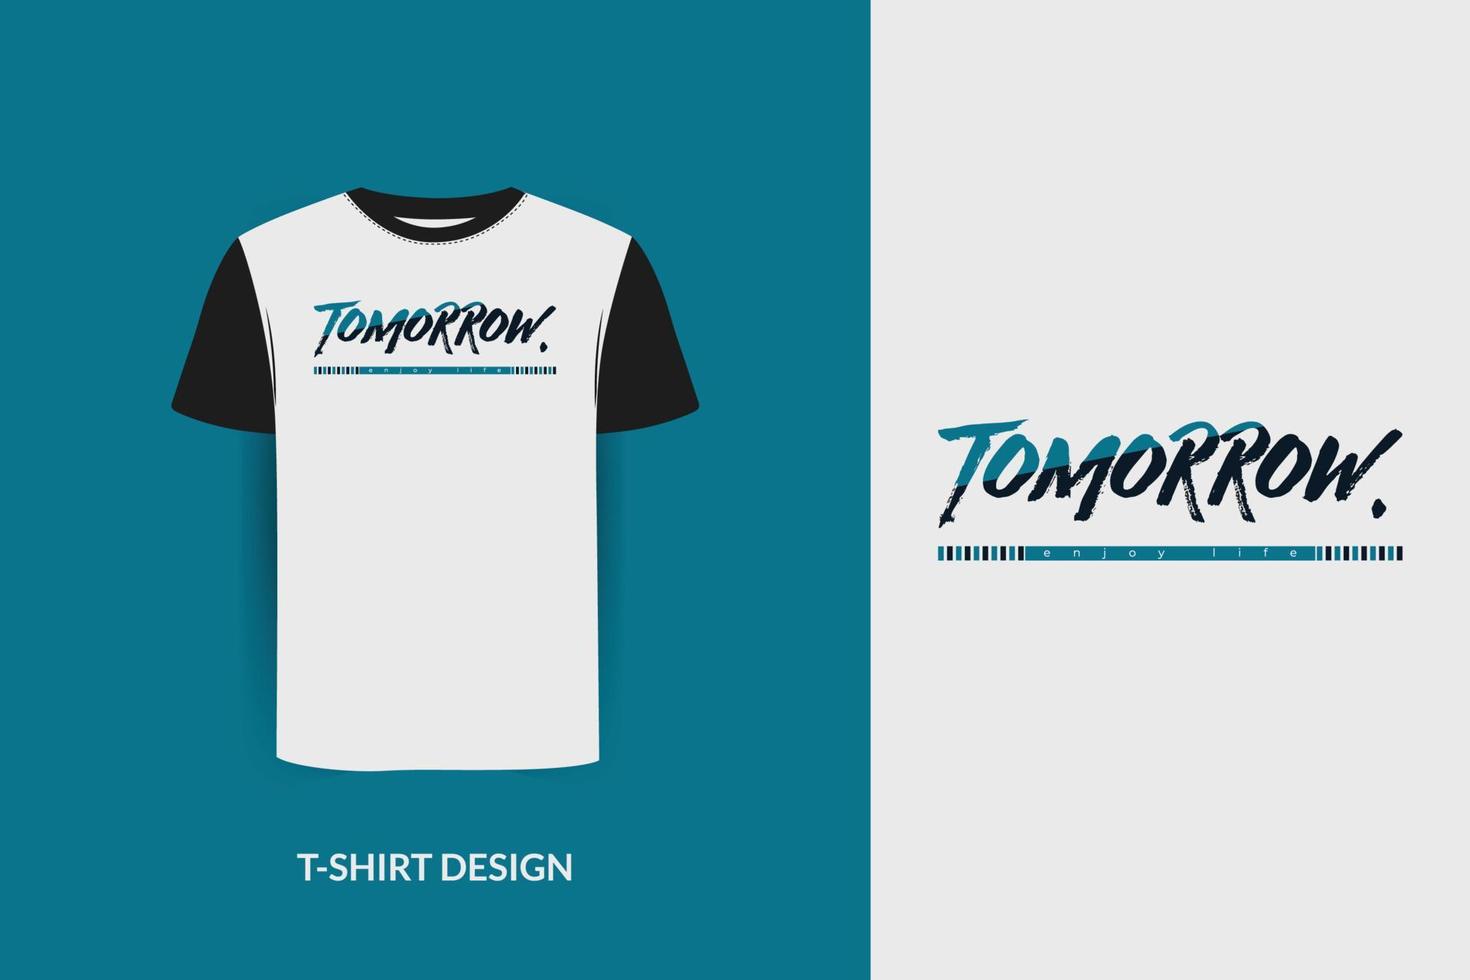 t-shirtontwerp. t-shirt print ontwerp, t-shirt design met typografie, typografie, print, vector